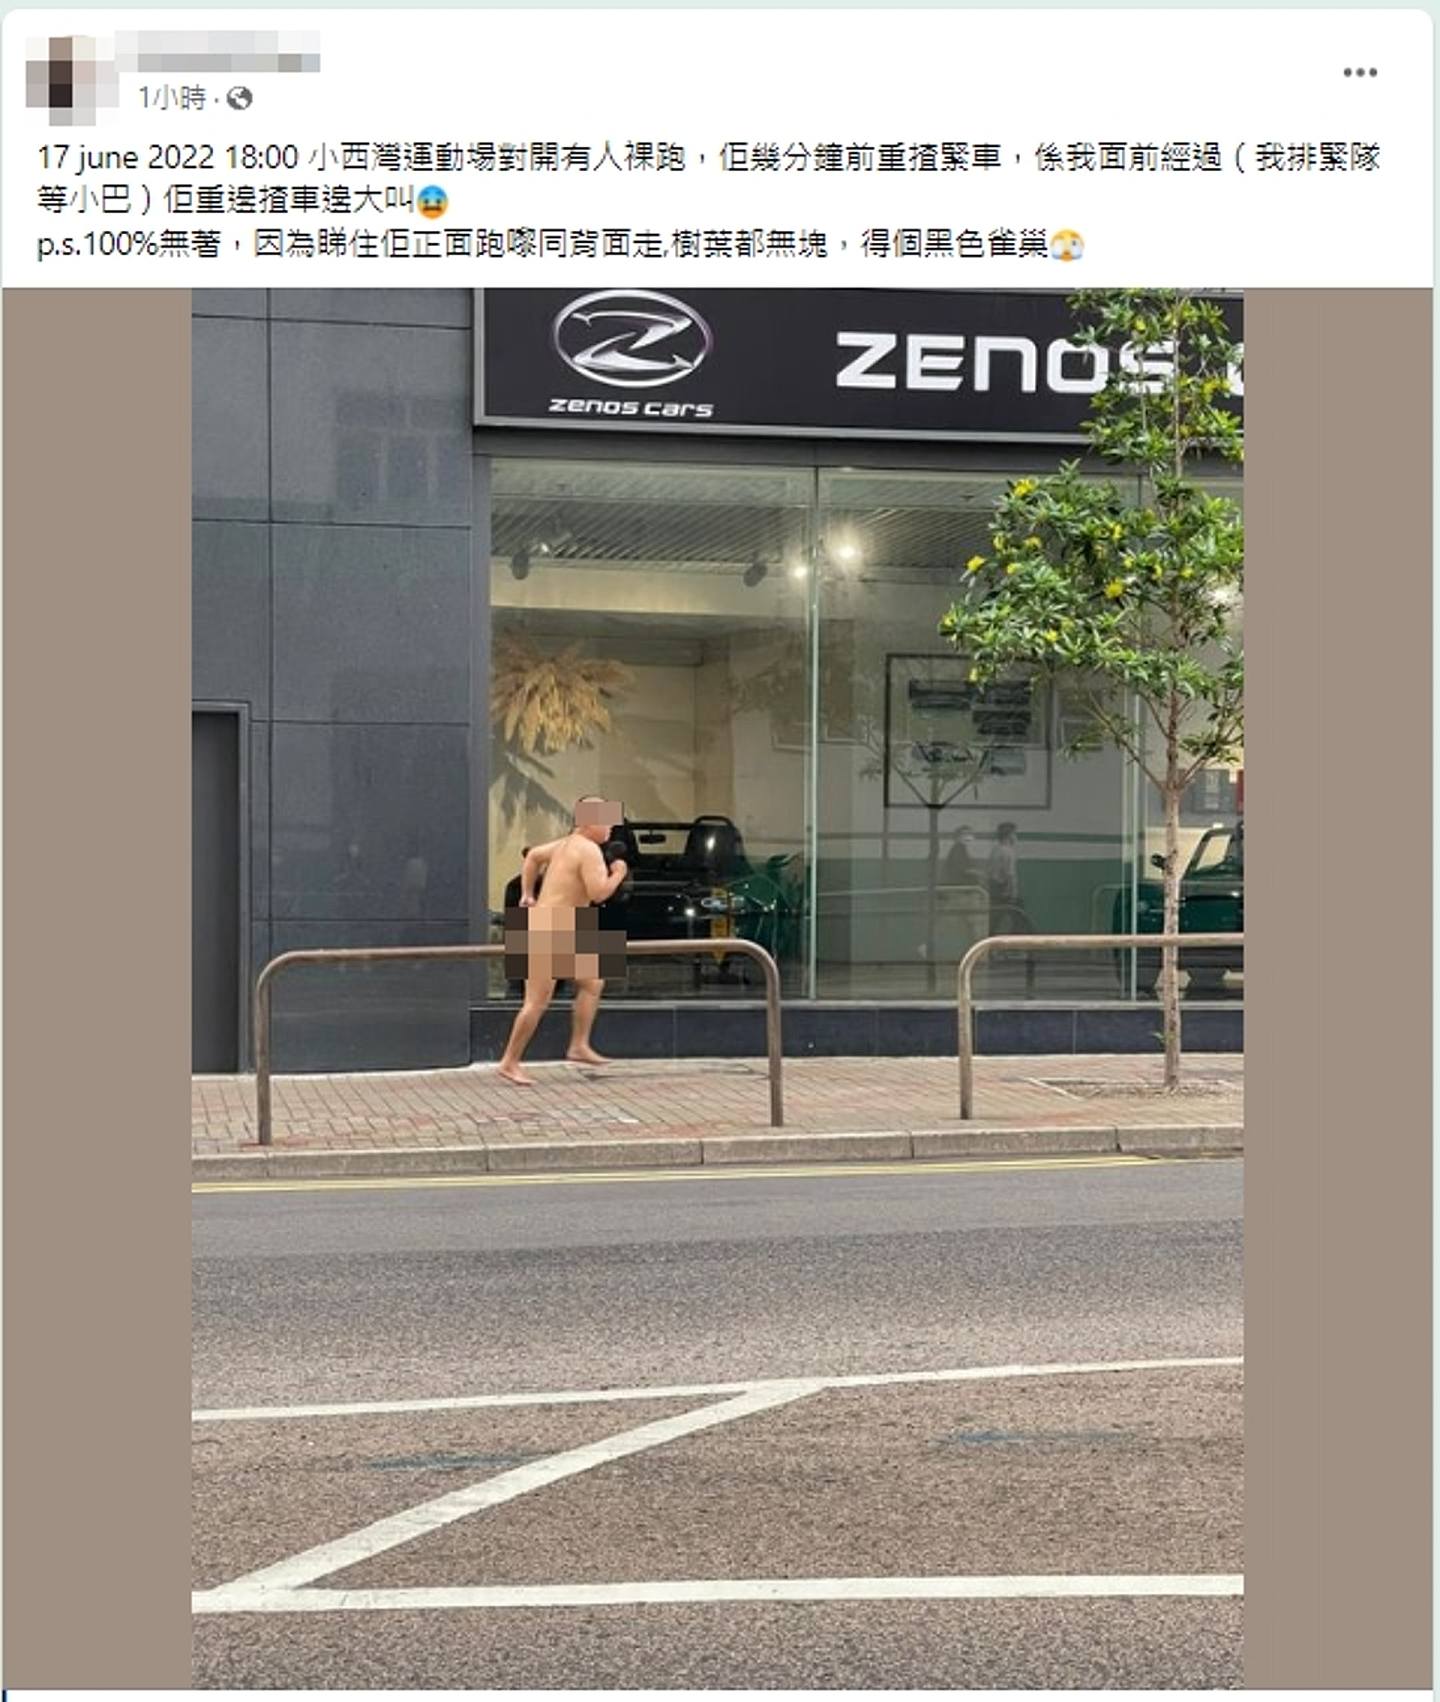 有网民早前于网上指发现一名全身赤裸的男子在行人路奔跑。 （互联网）